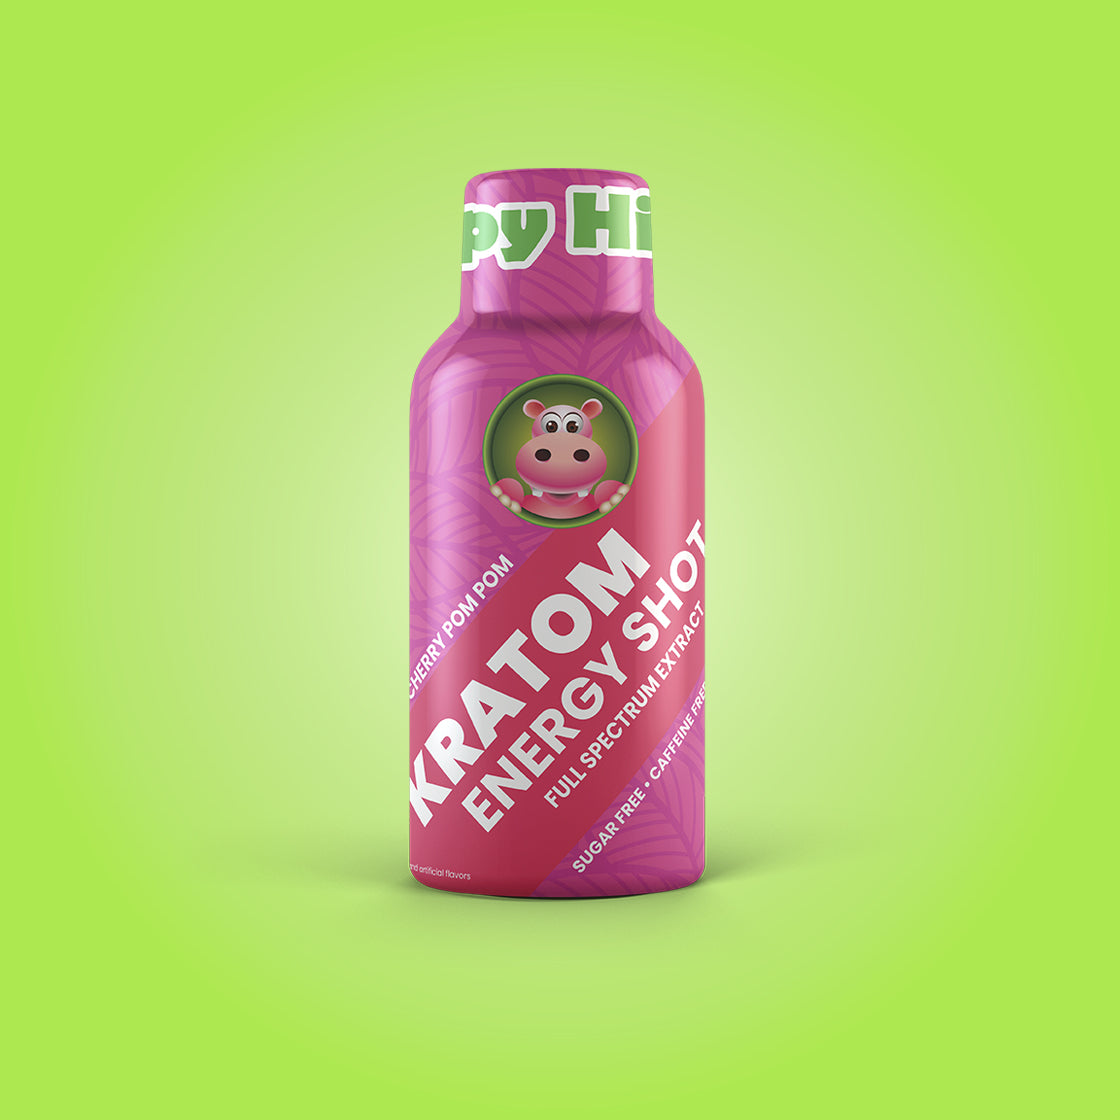 Kratom Energy Shot (New Way Better Taste!)